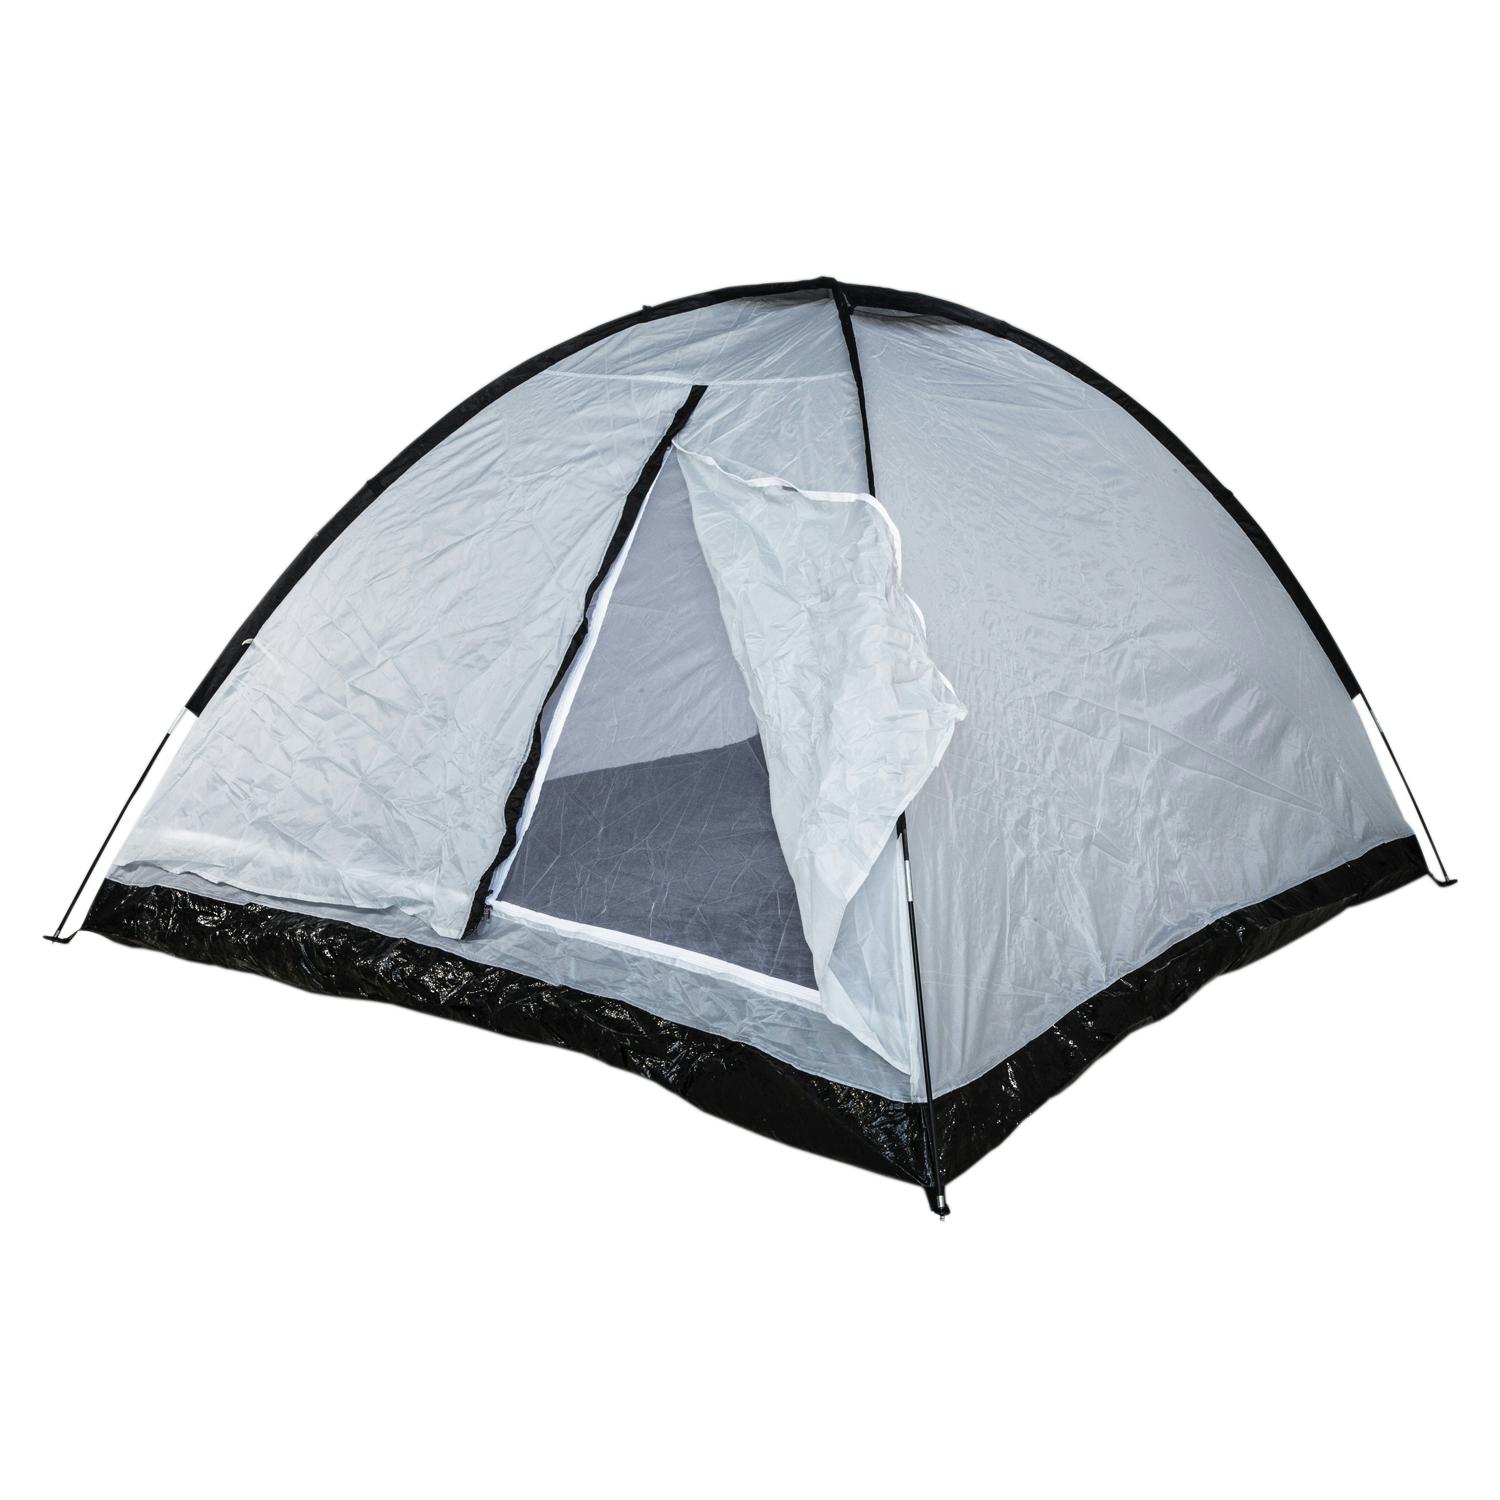 אוהל מחנאות 240x210x130 ס”מ, ל-4 אנשים בעל רצפת בידוד מרטיבות.
כולל תאי אחסון בצדדים ורשת קדמית למניעת כניסת יתושים.